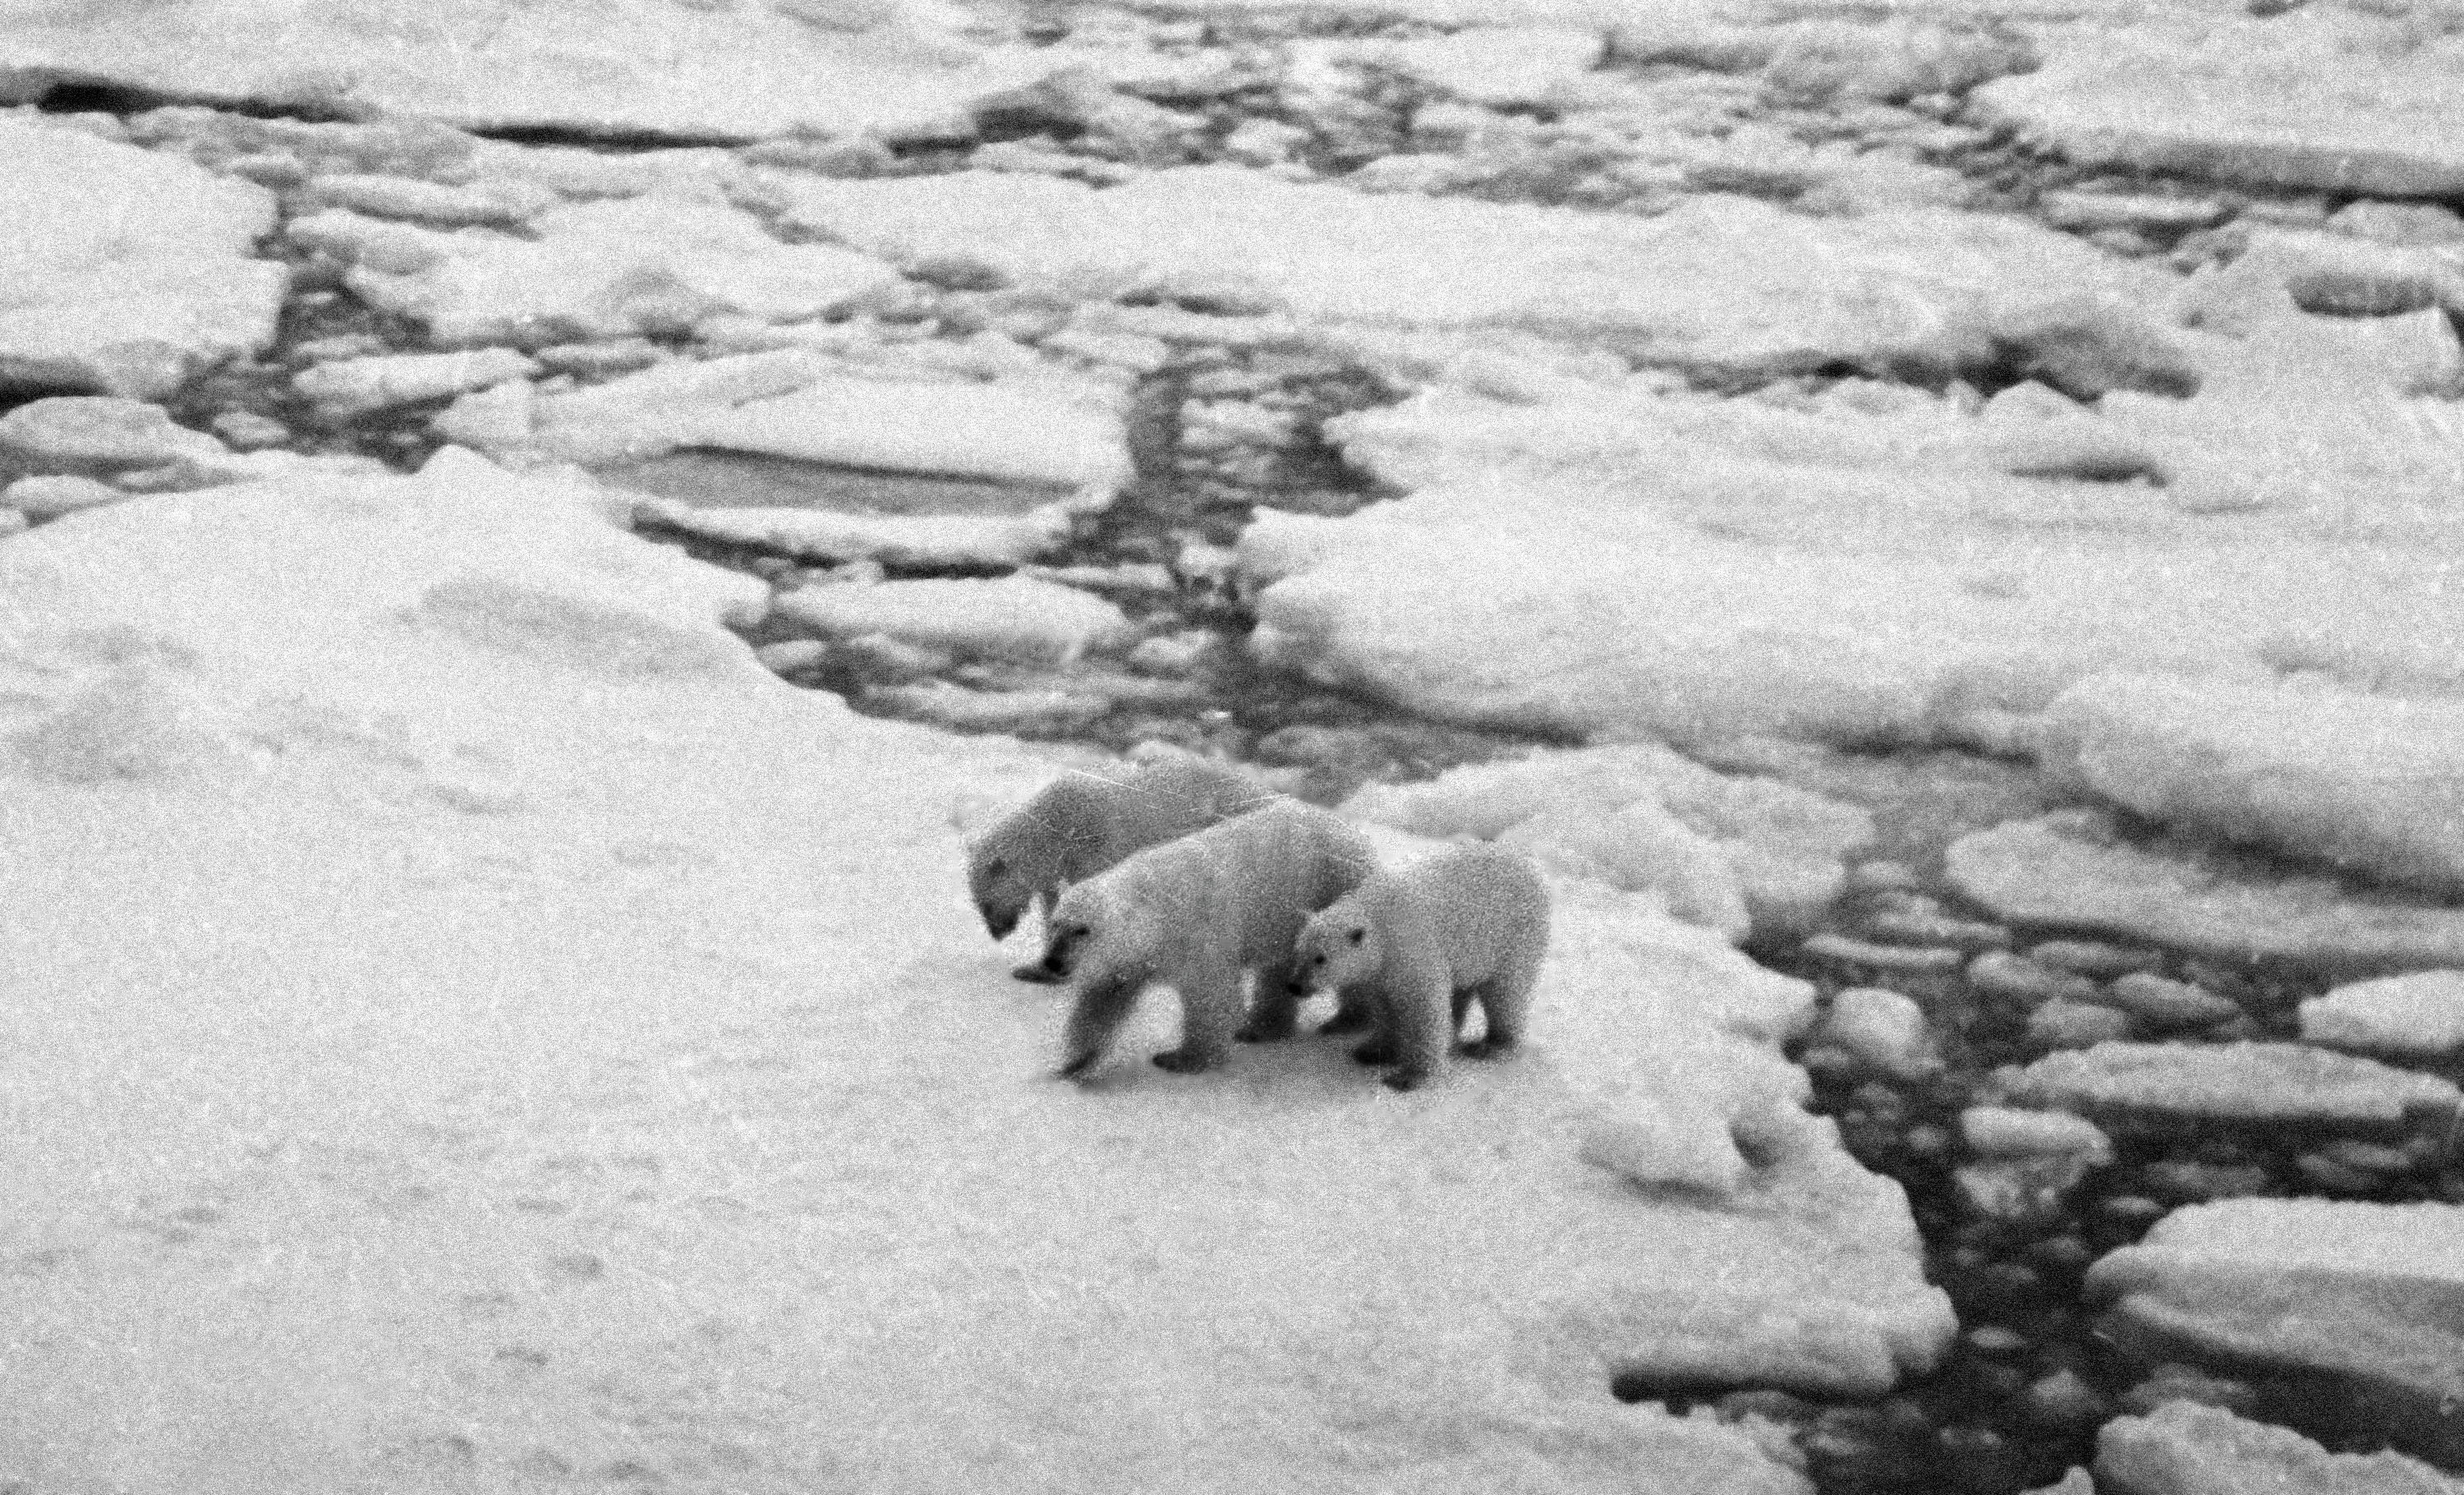 Female polar bear with two cubs walks along ice floe